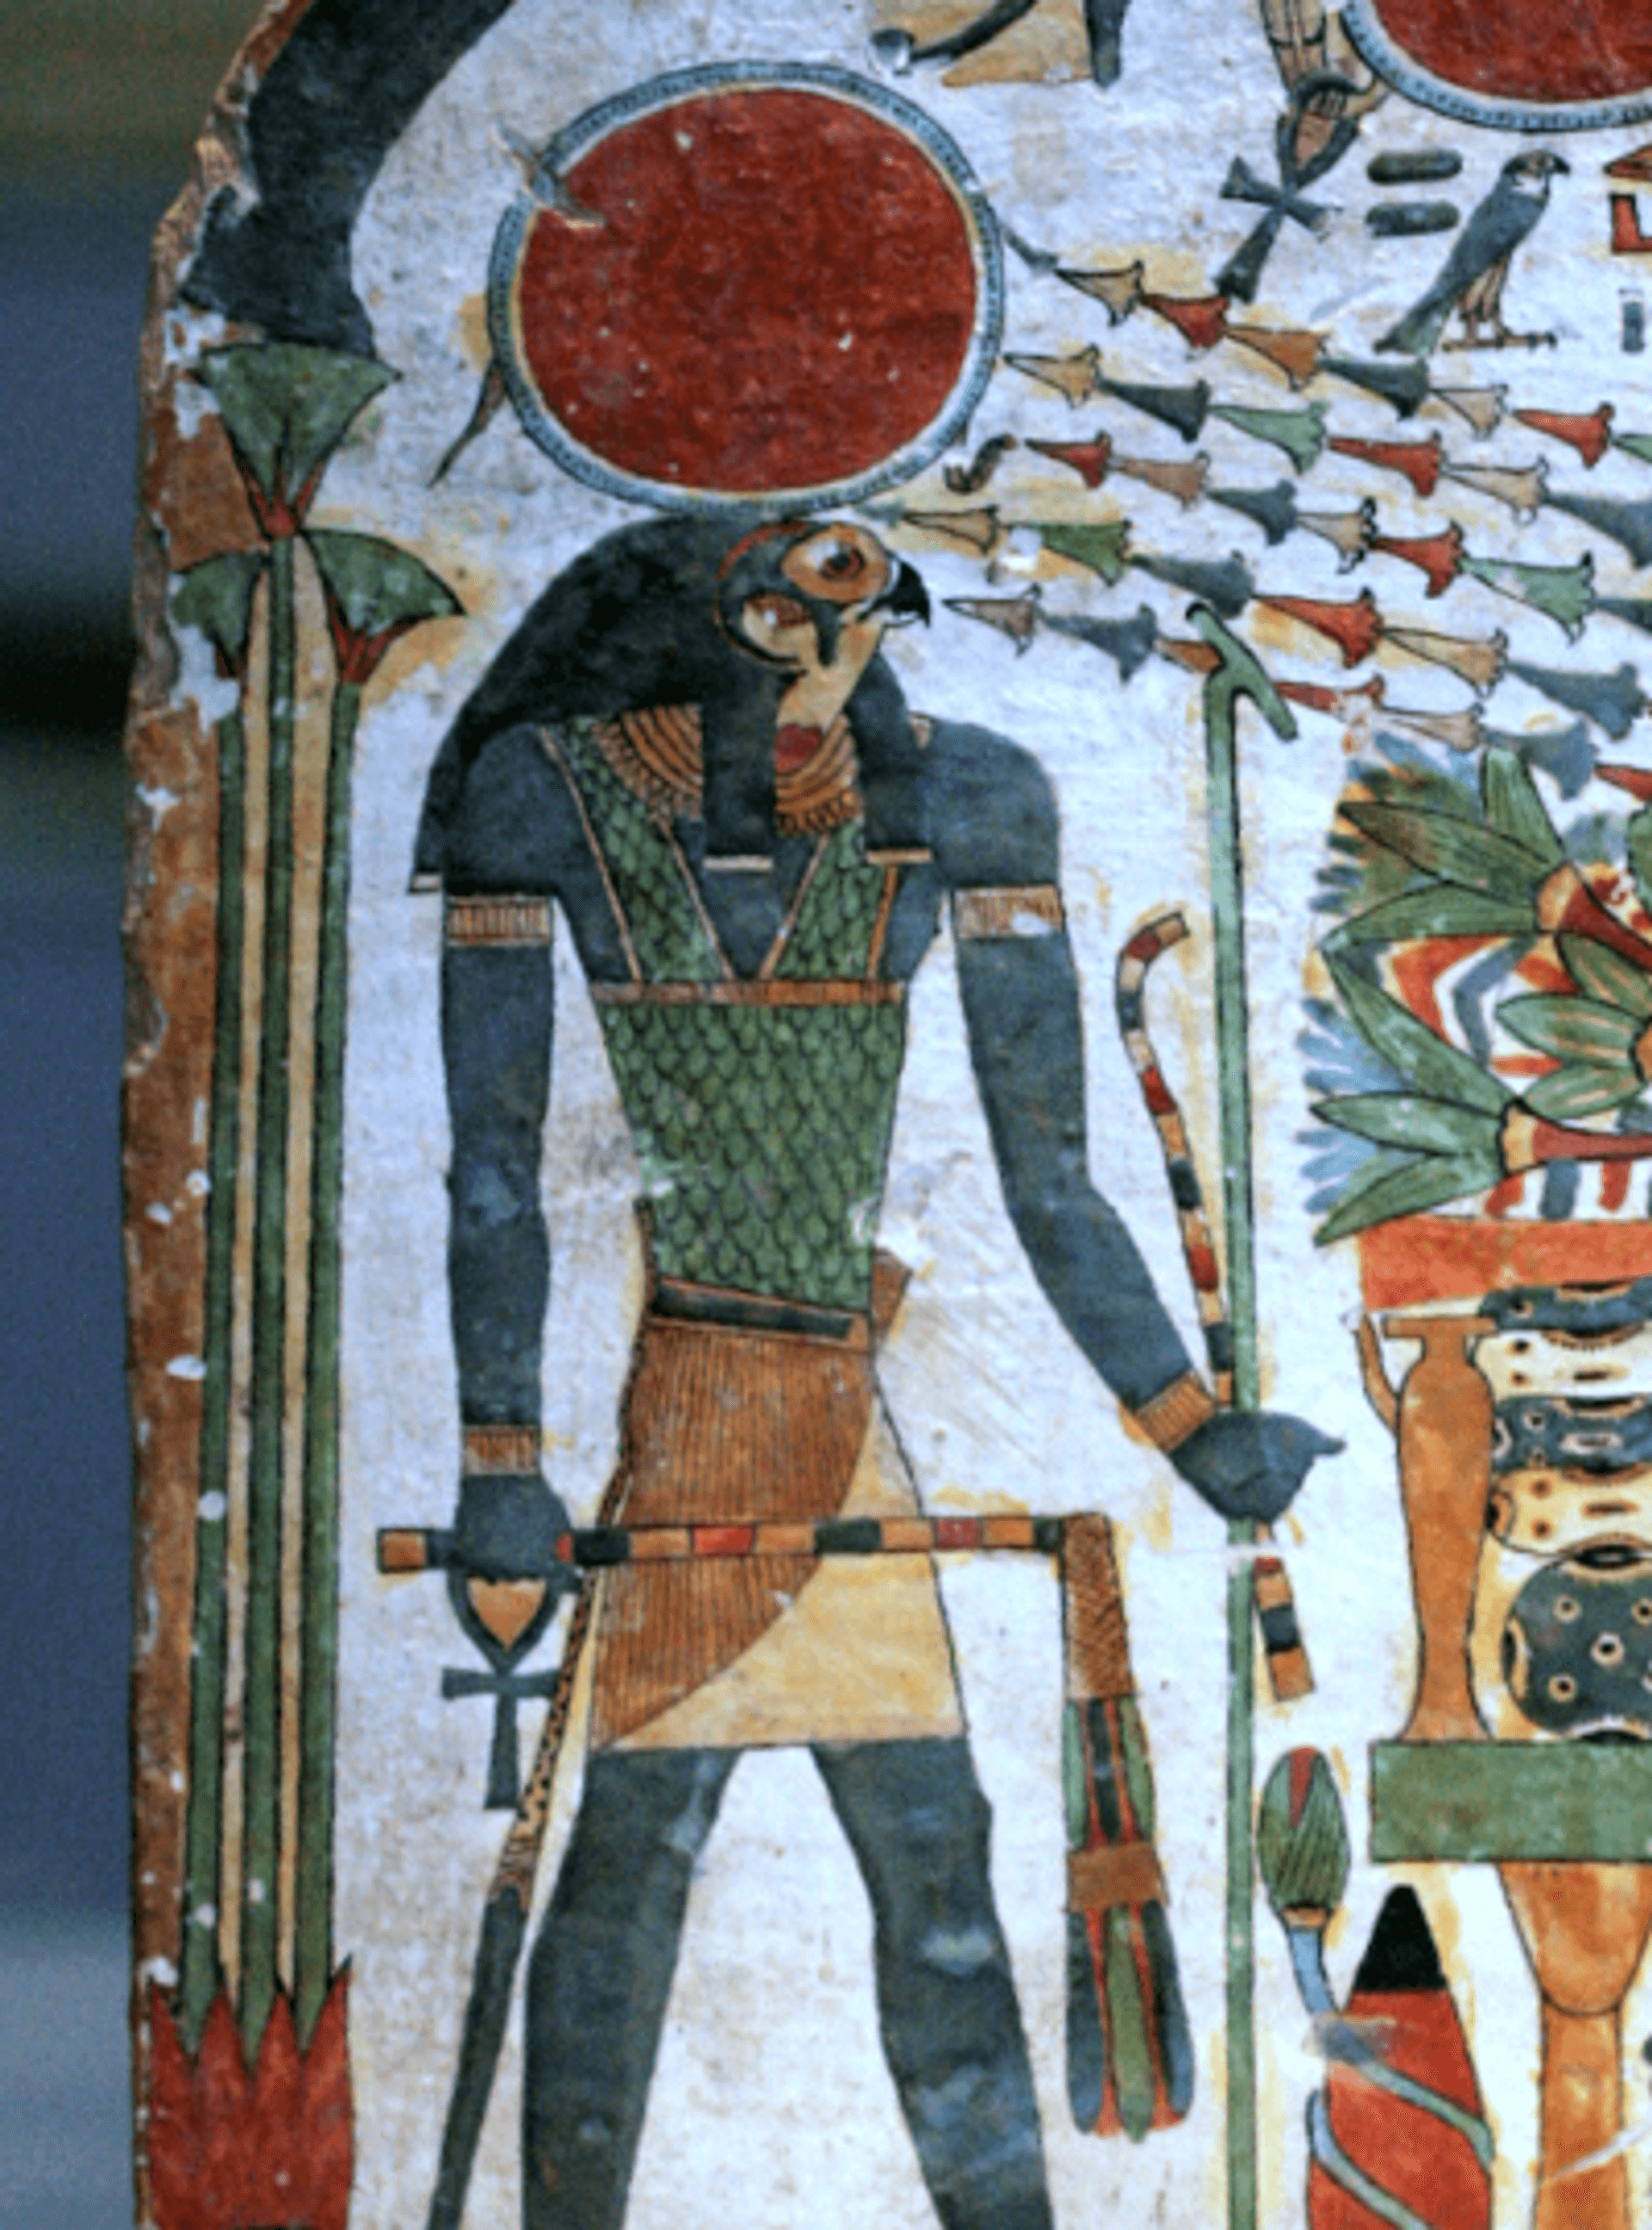 An image of the Egyptian God Ra